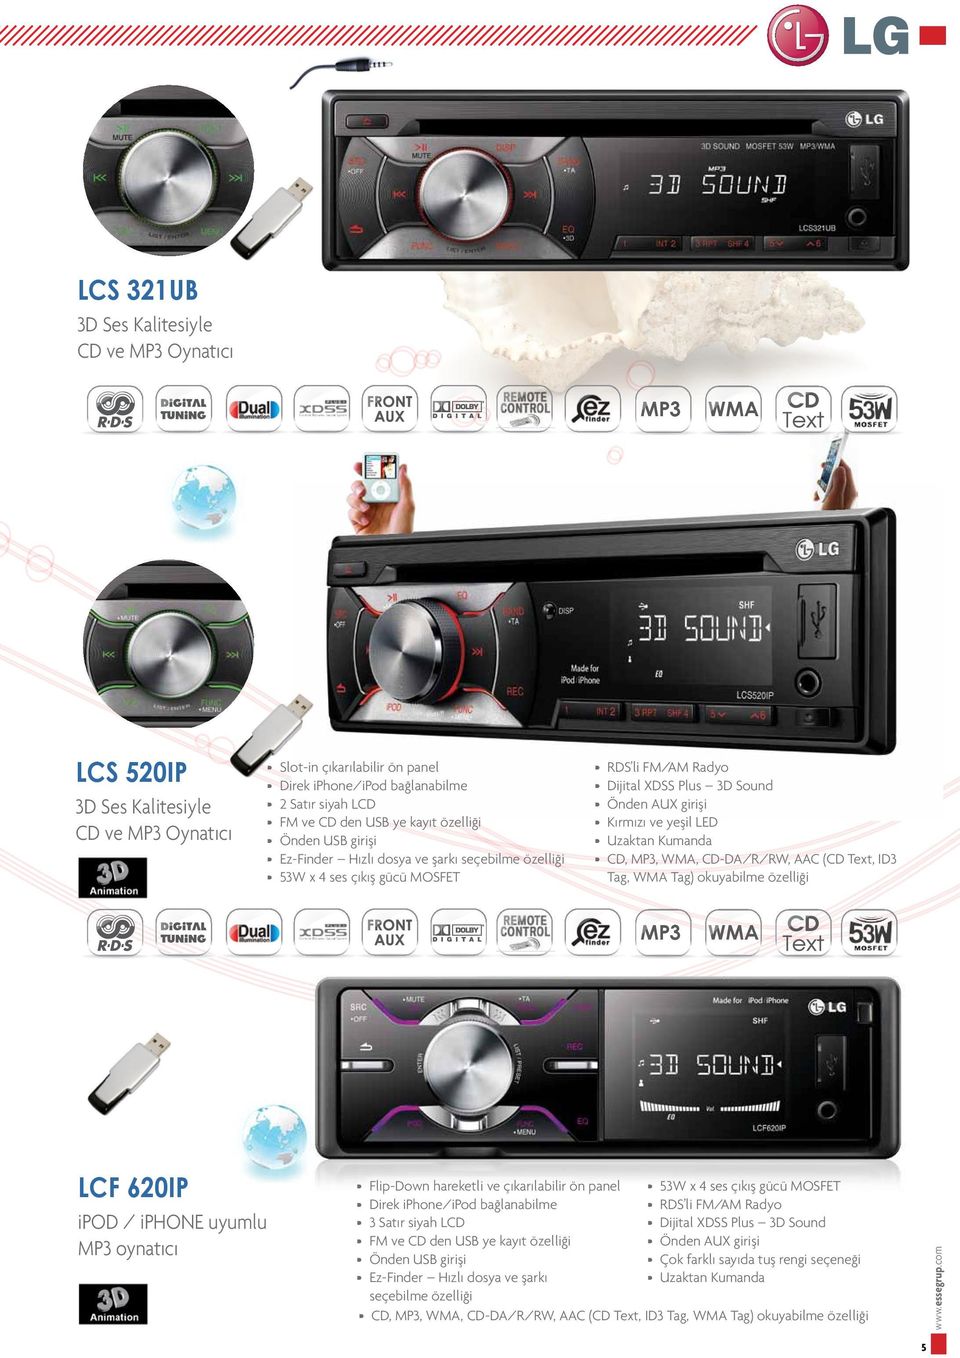 Kumanda CD,,, CD-DA/R/RW, AAC (CD Text, Tag, Tag) okuyabilme özelliği LCF 620IP / iphone uyumlu oynatıcı Flip-Down hareketli ve çıkarılabilir ön panel Direk iphone/ipod bağlanabilme 3 Satır siyah LCD